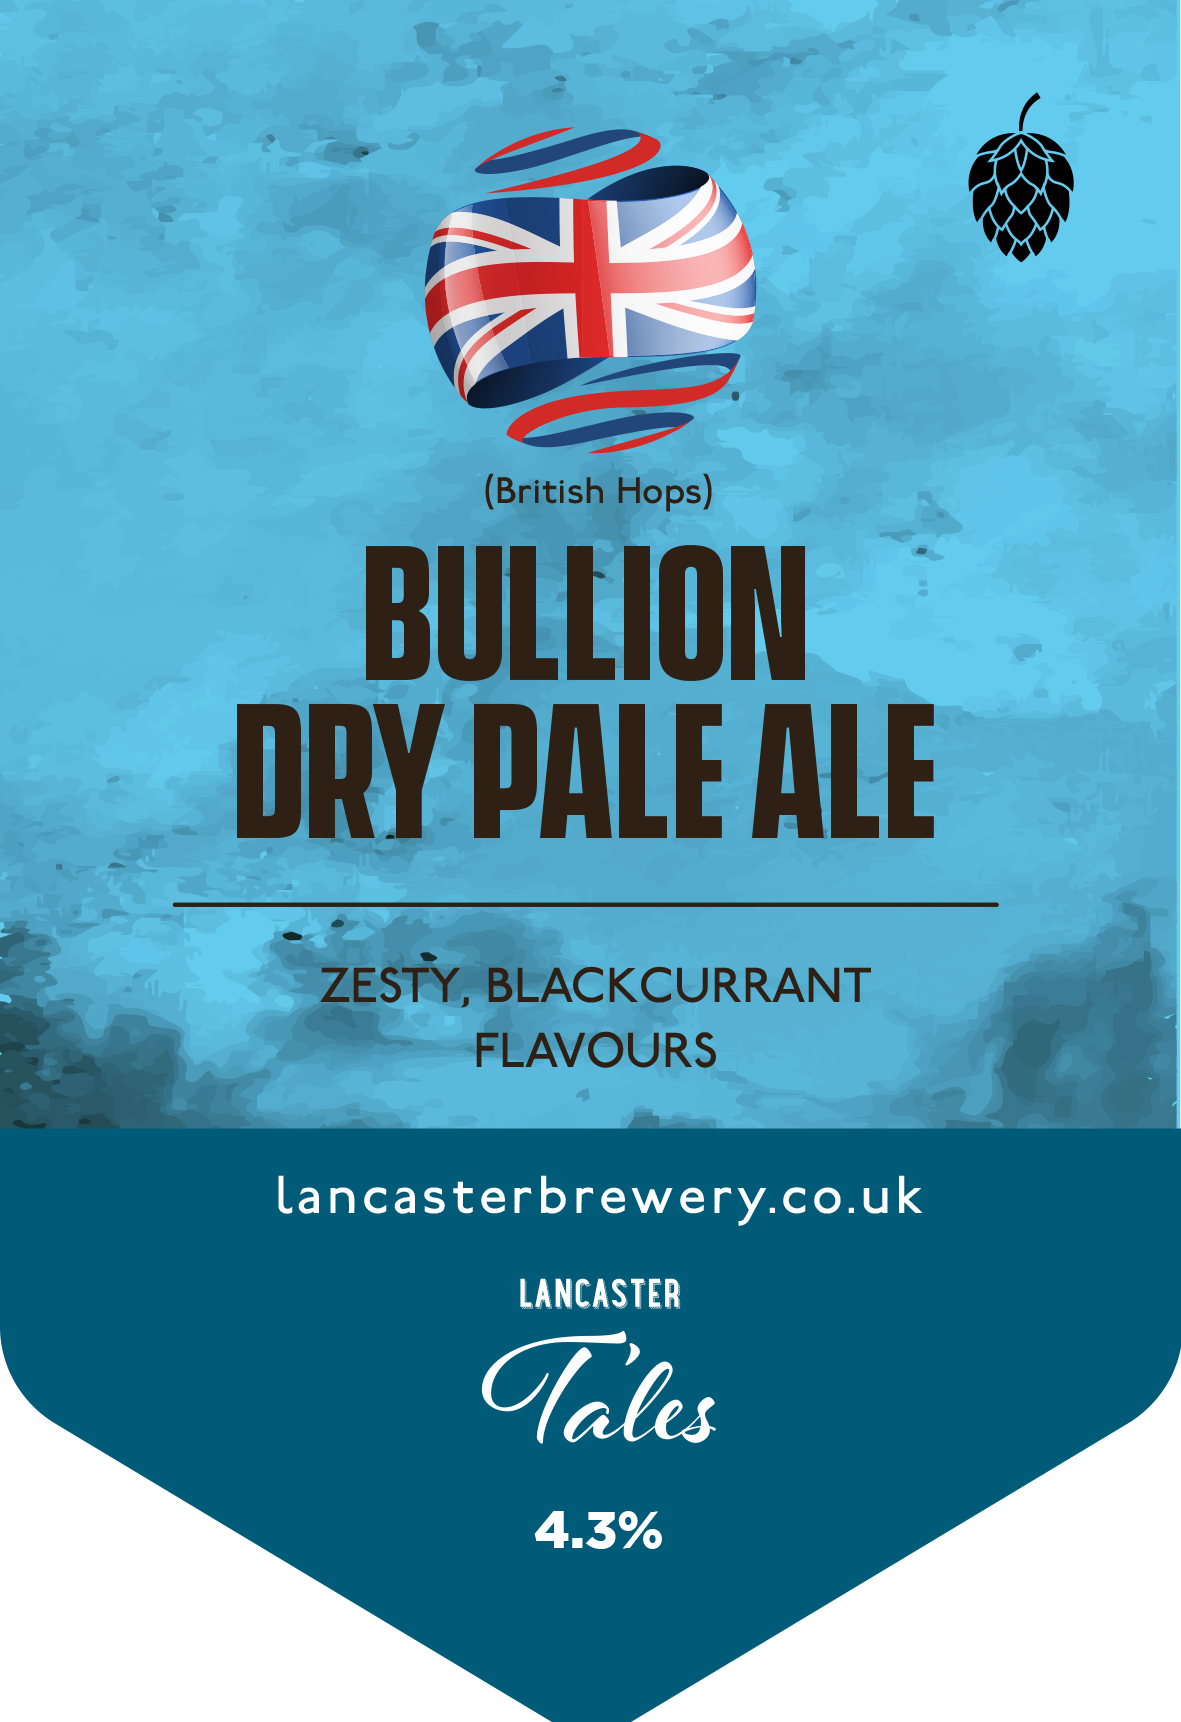 Bullion Dry Pale Ale - April